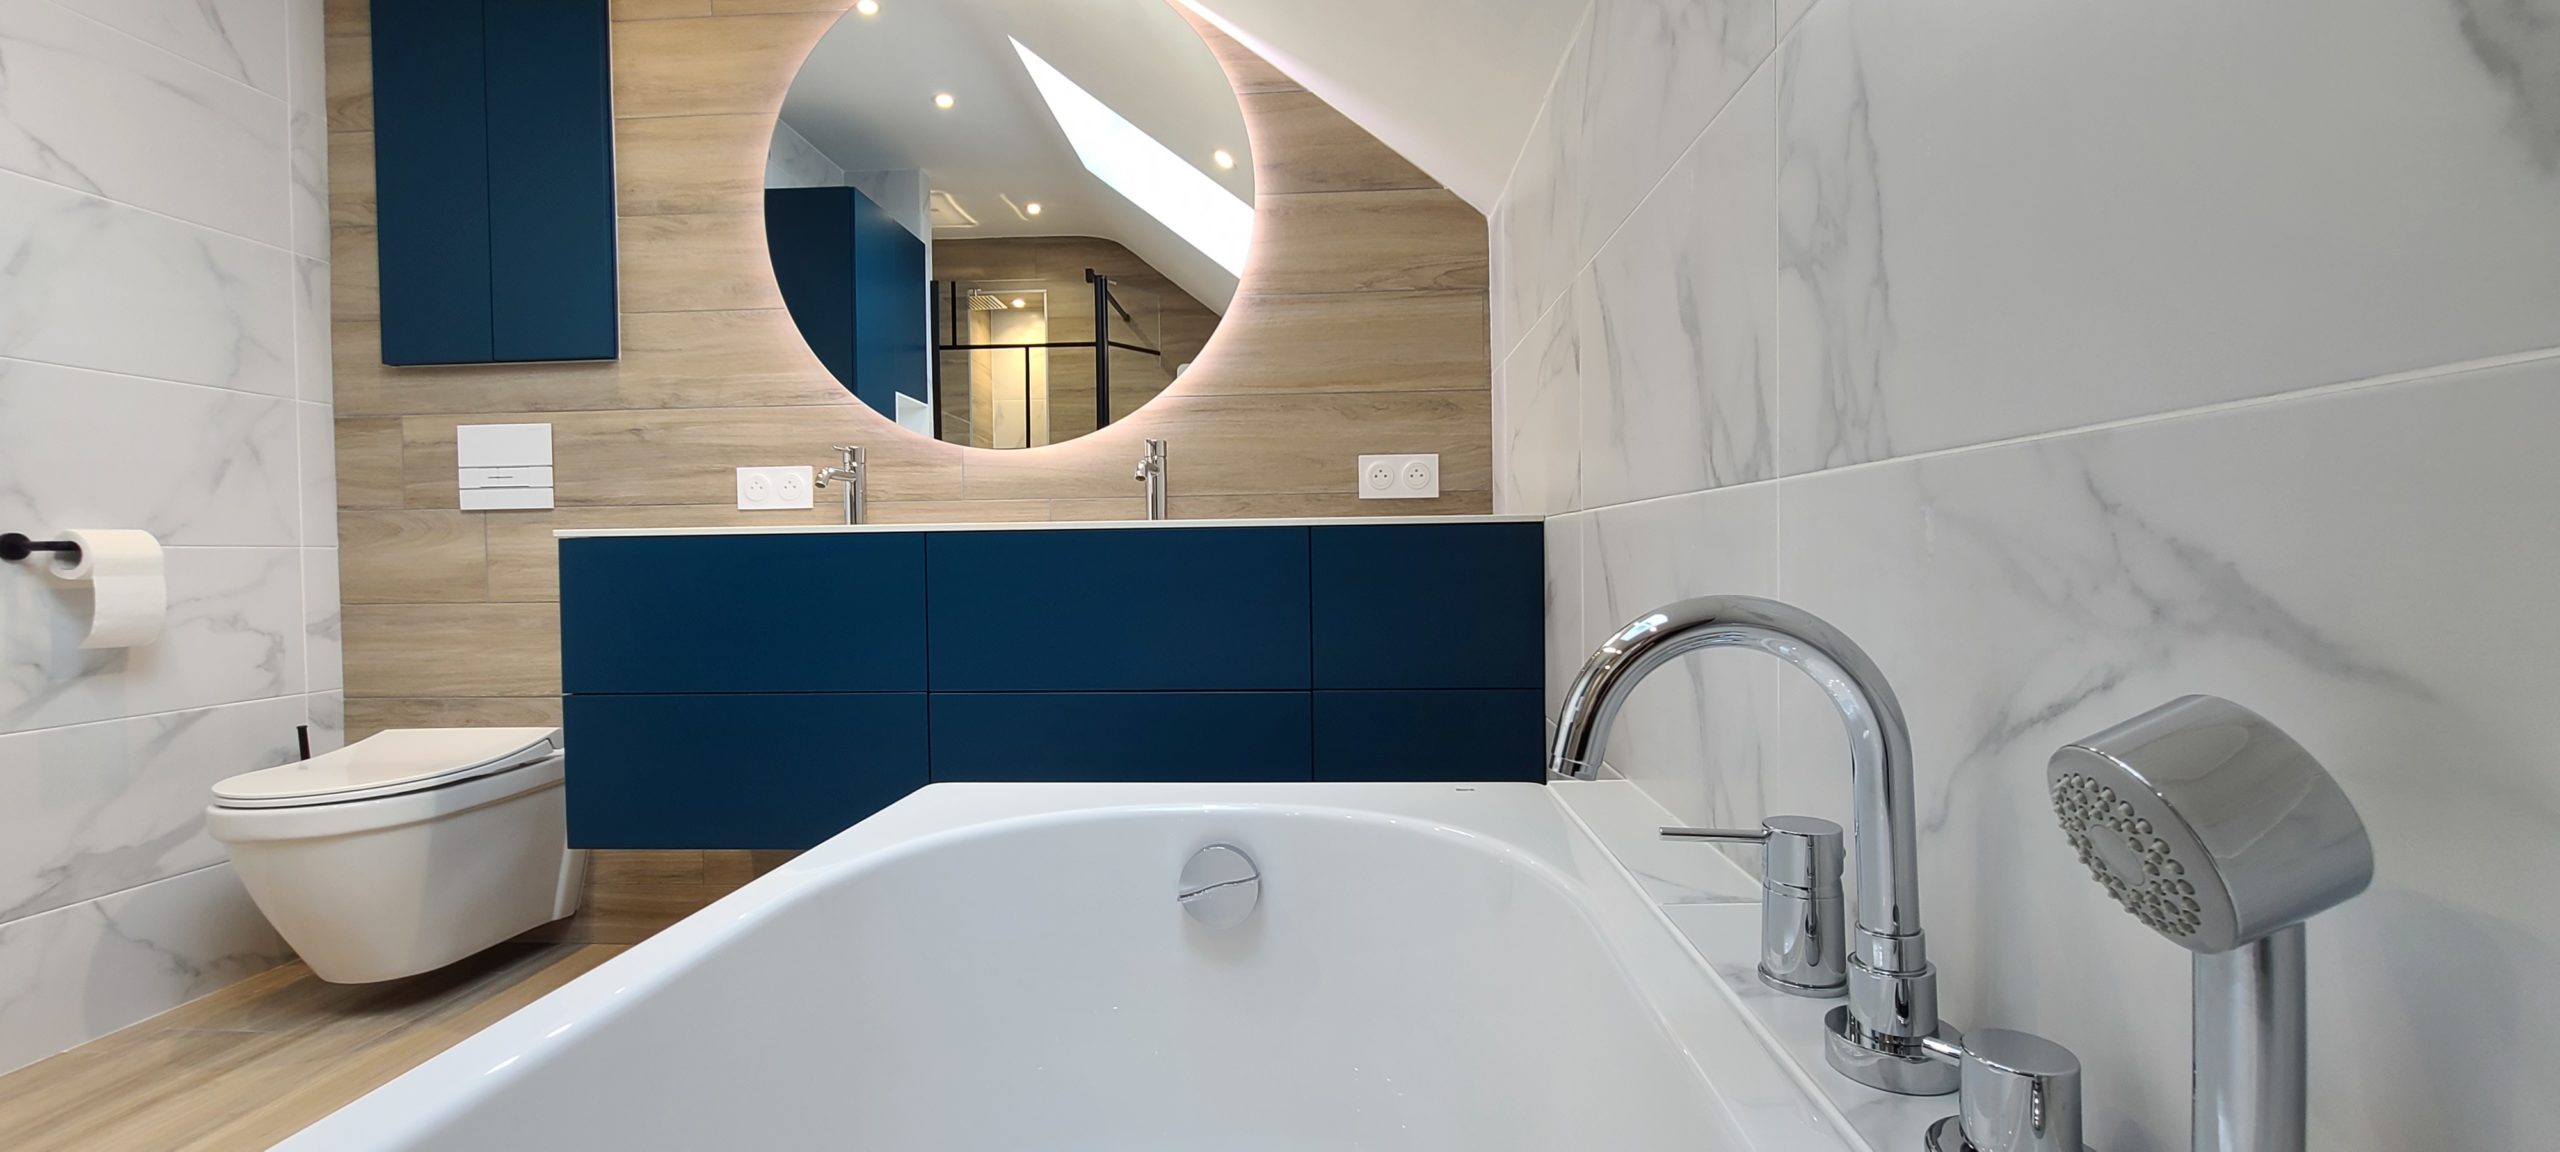 salle bain contemporaine baignoire marbre bois apres s2ed poitiers